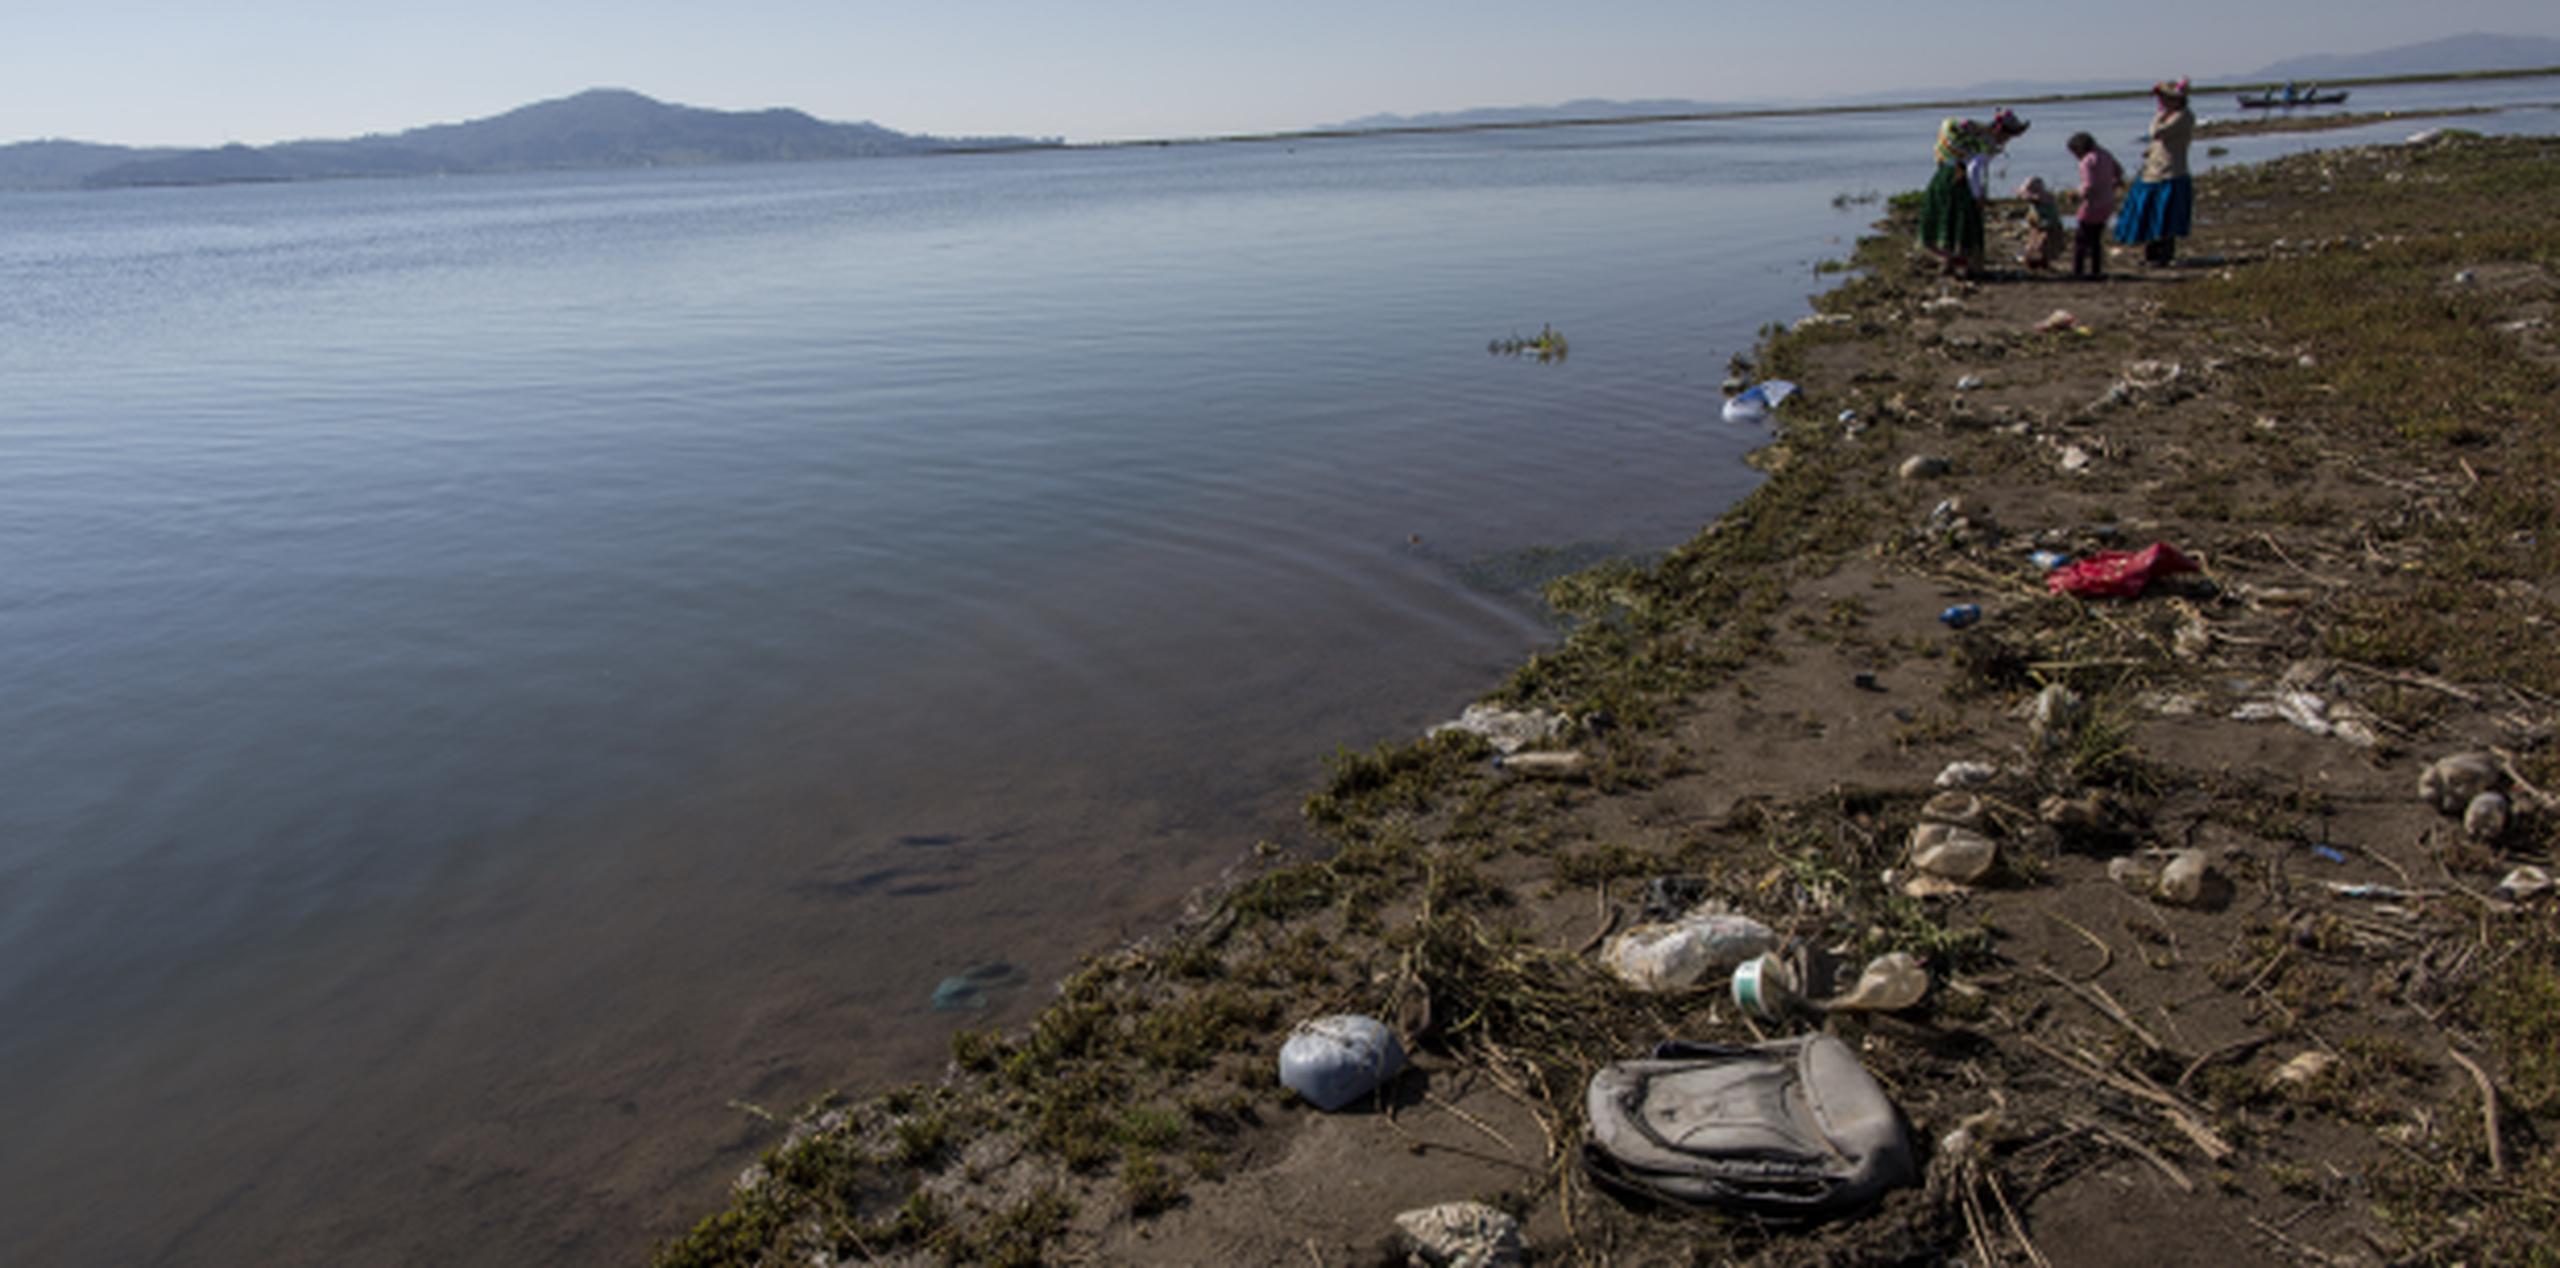 Las orillas del lago Titicaca están llenas de basura, al tiempo que sus aguas están cada vez más contaminadas. (AP/Rodrigo Abd)